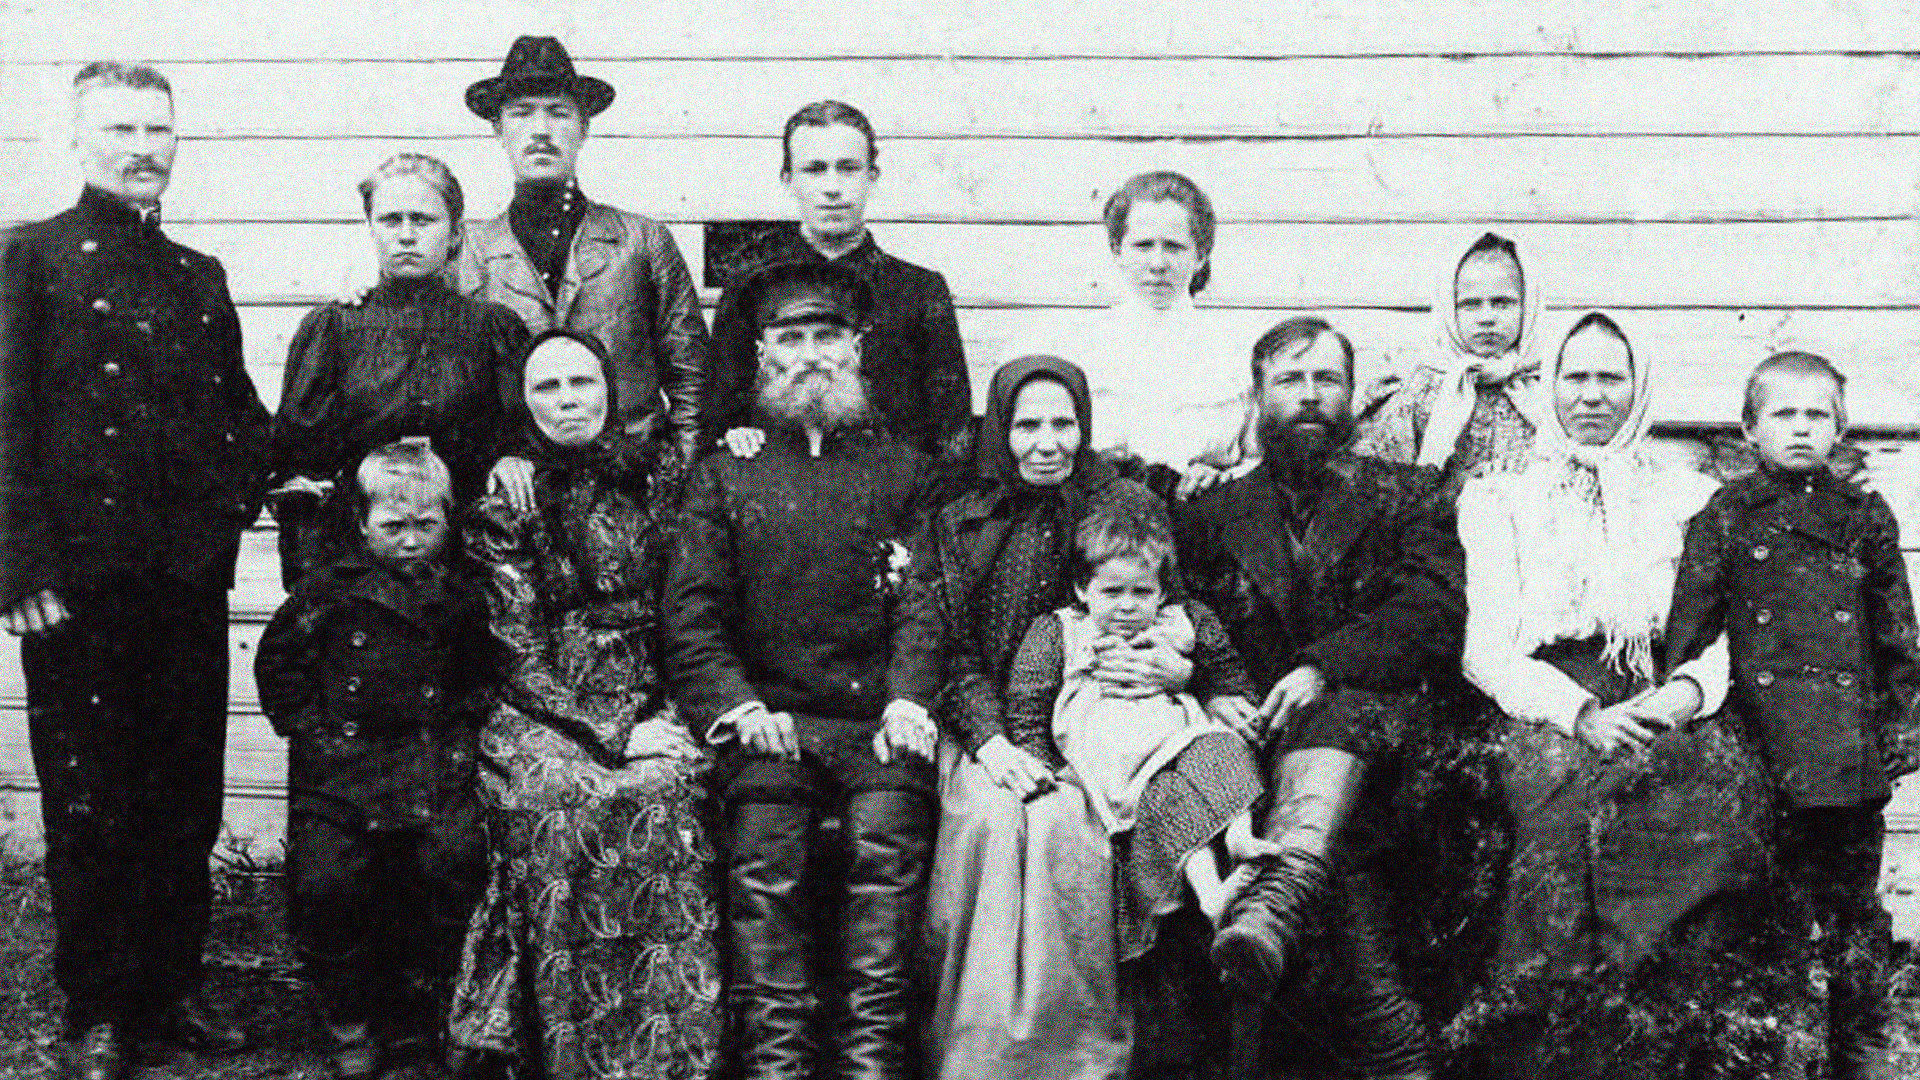 Image d'illustration. Une famille paysanne russe du début du XXe siècle